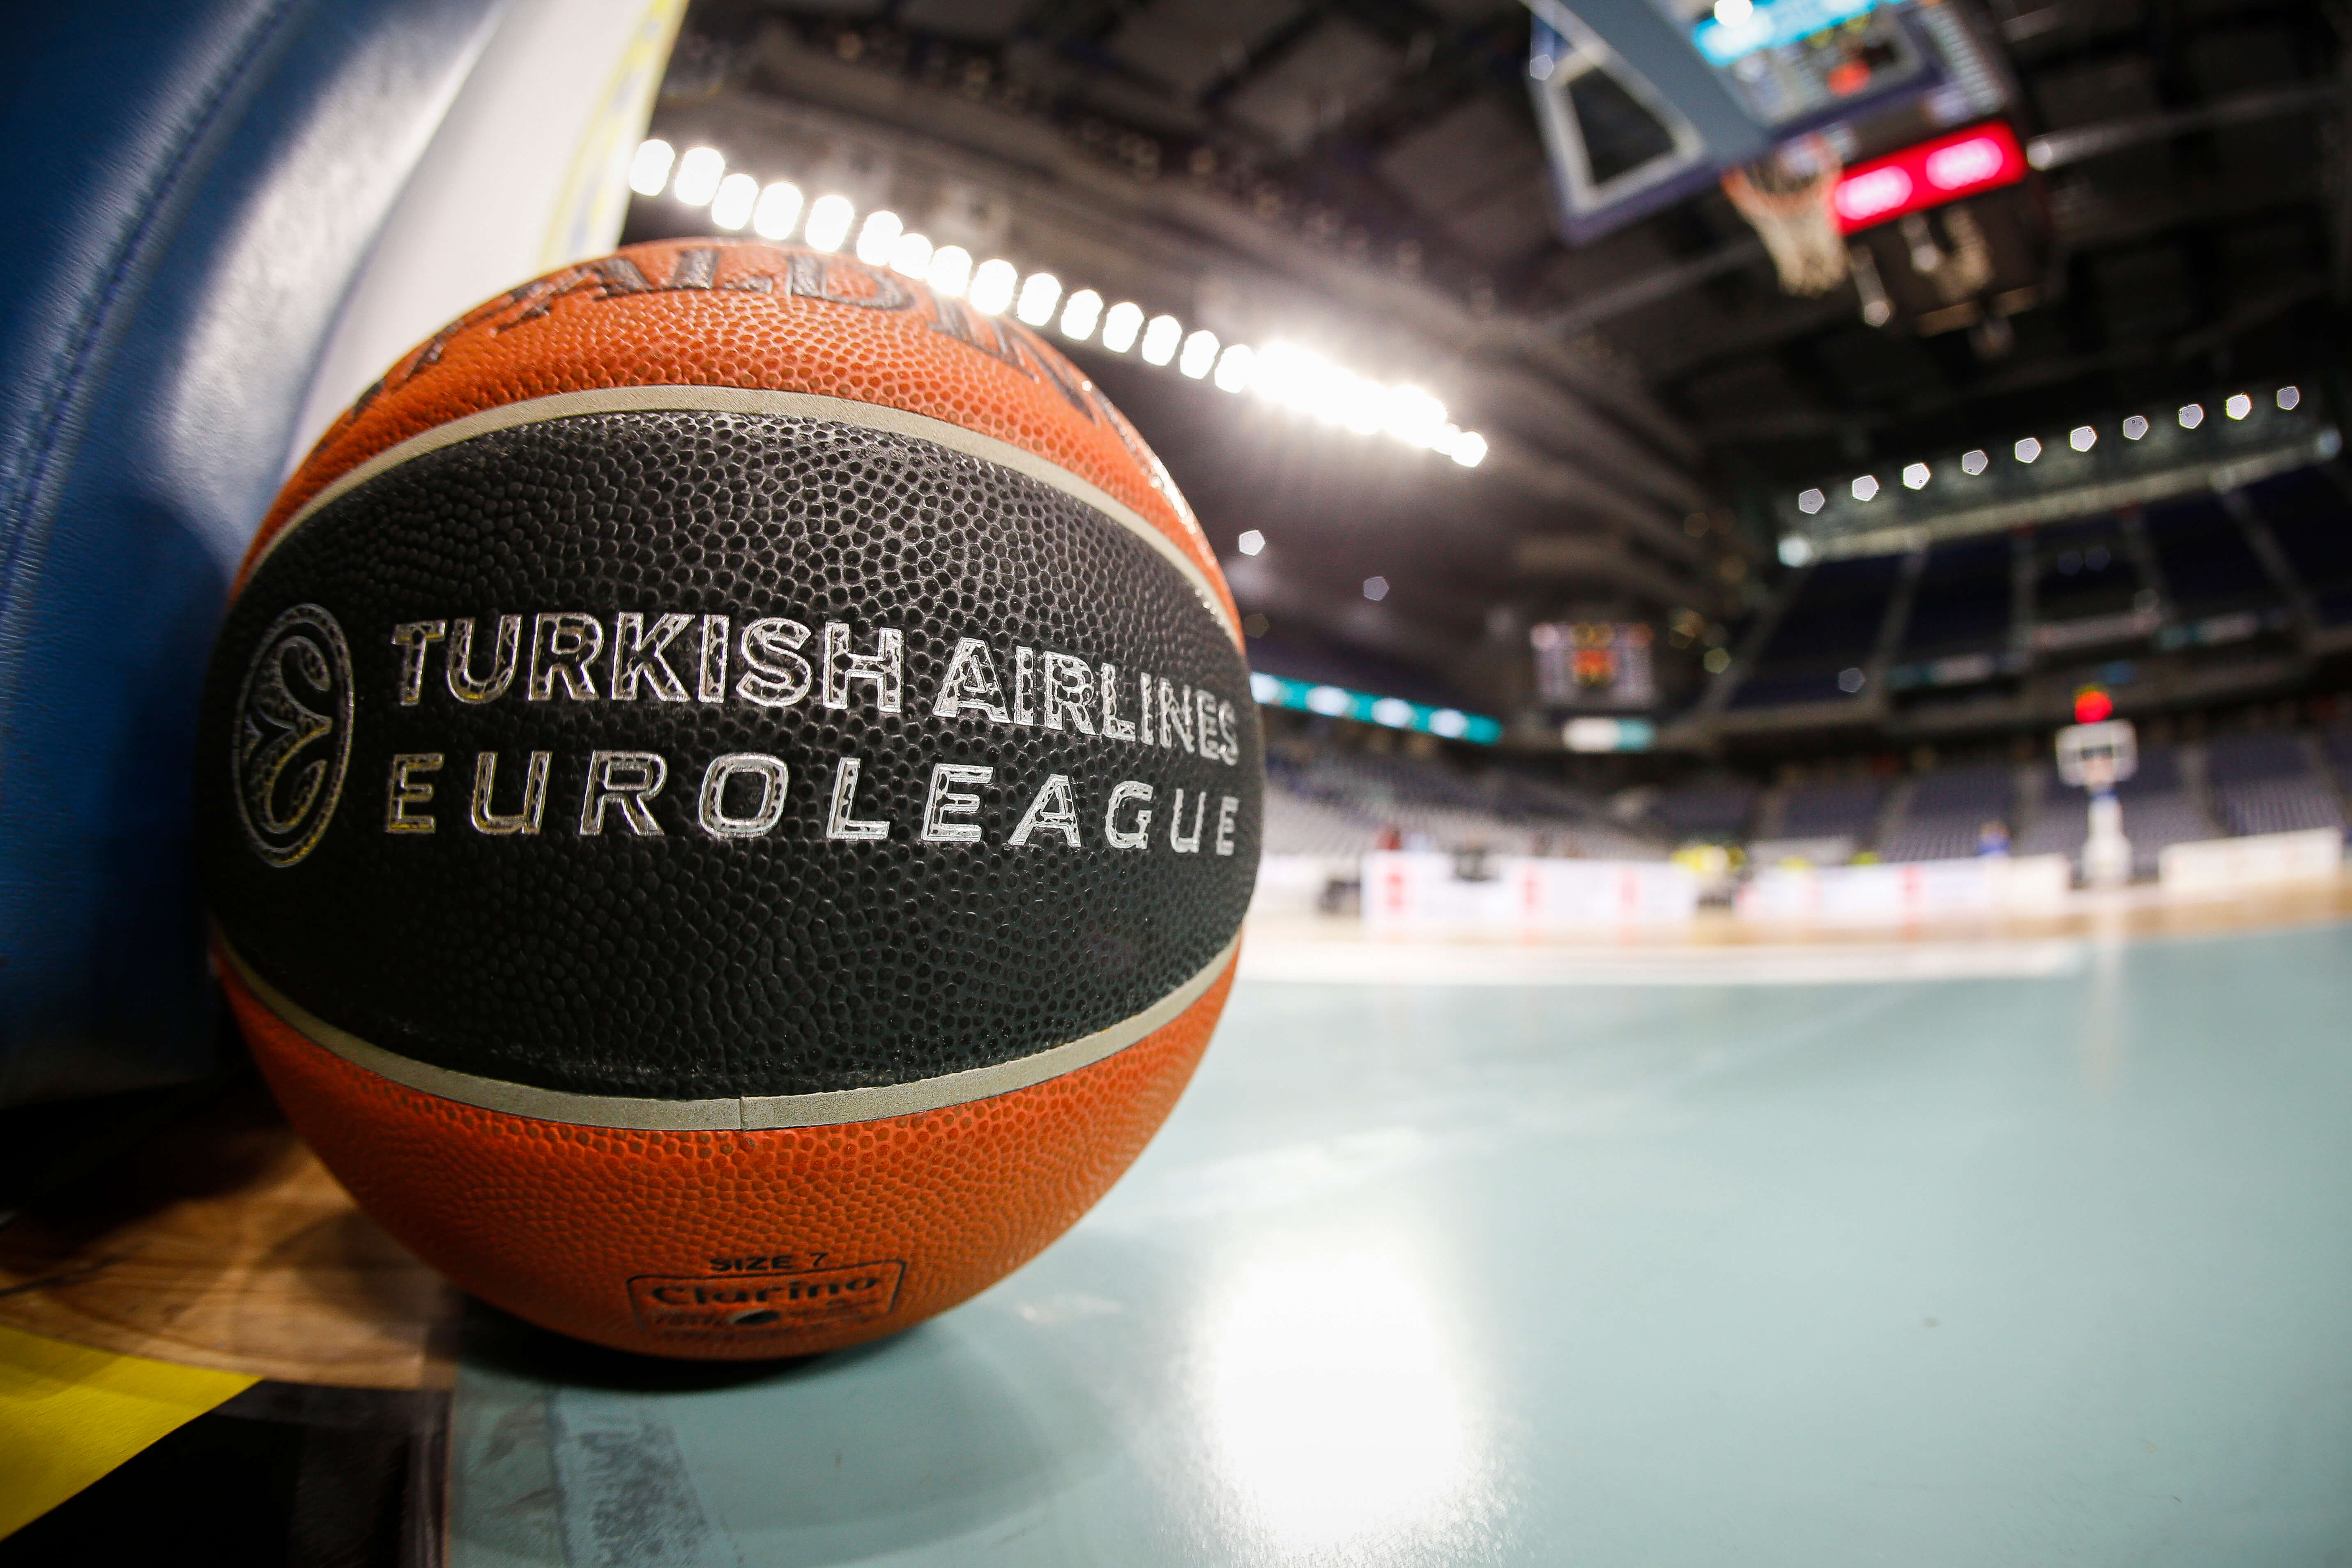 Βαθμολογία Euroleague: Τρίτος ο Ολυμπιακός, προτελευταίος ο Παναθηναϊκός